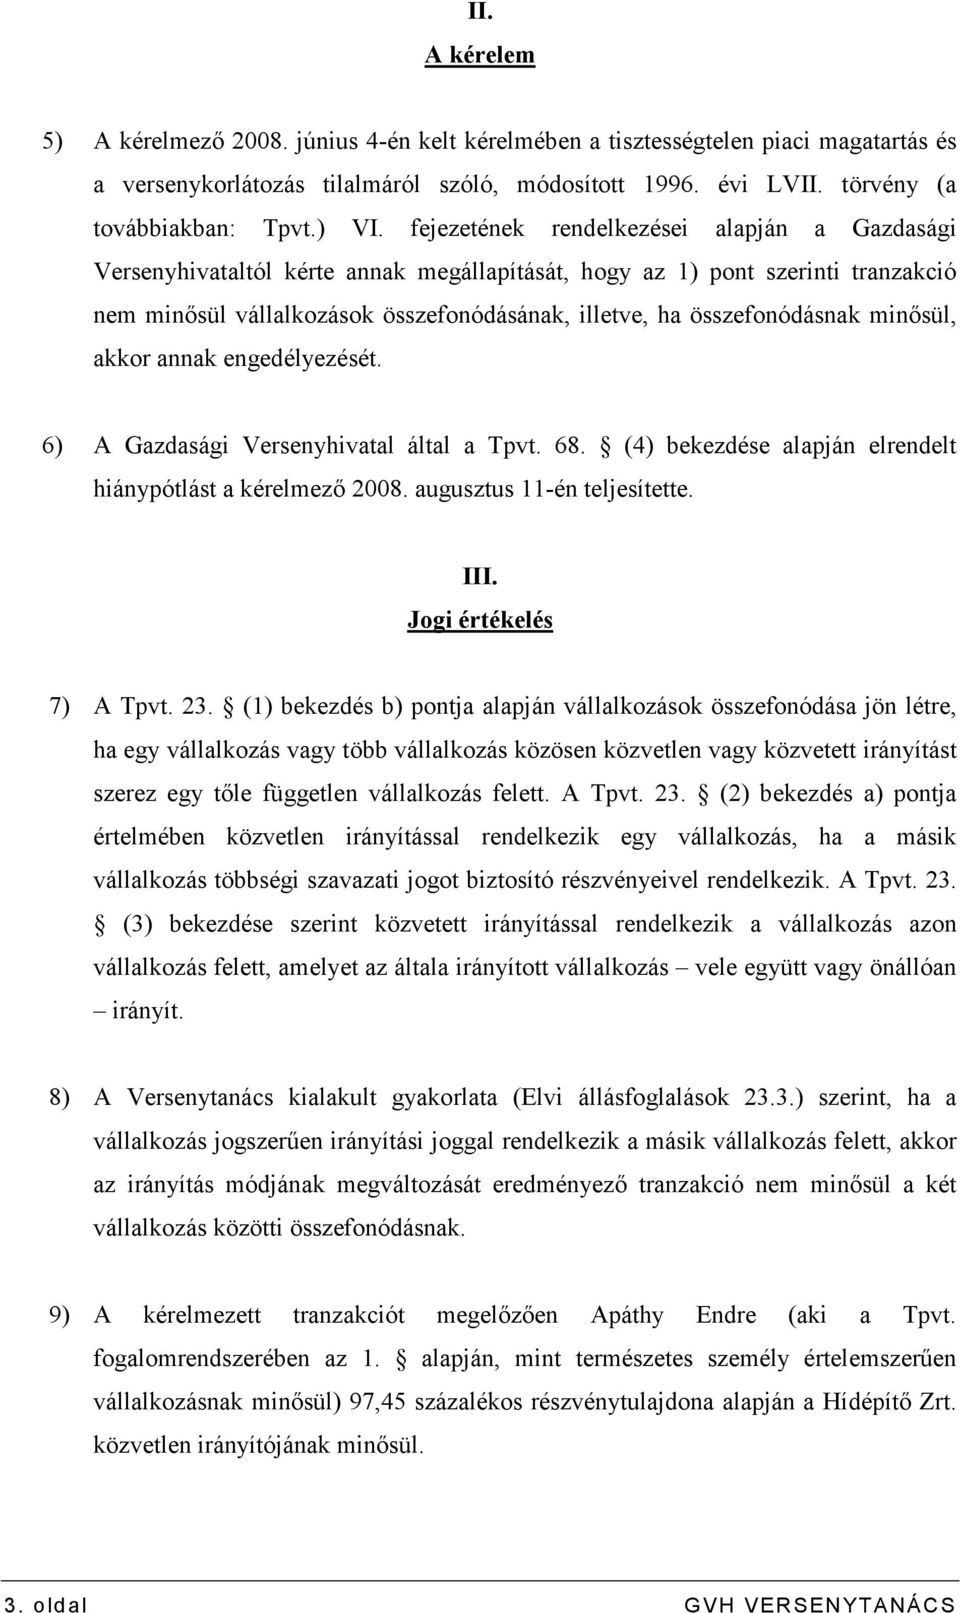 összefonódásnak minısül, akkor annak engedélyezését. 6) A Gazdasági Versenyhivatal által a Tpvt. 68. (4) bekezdése alapján elrendelt hiánypótlást a kérelmezı 2008. augusztus 11-én teljesítette. III.